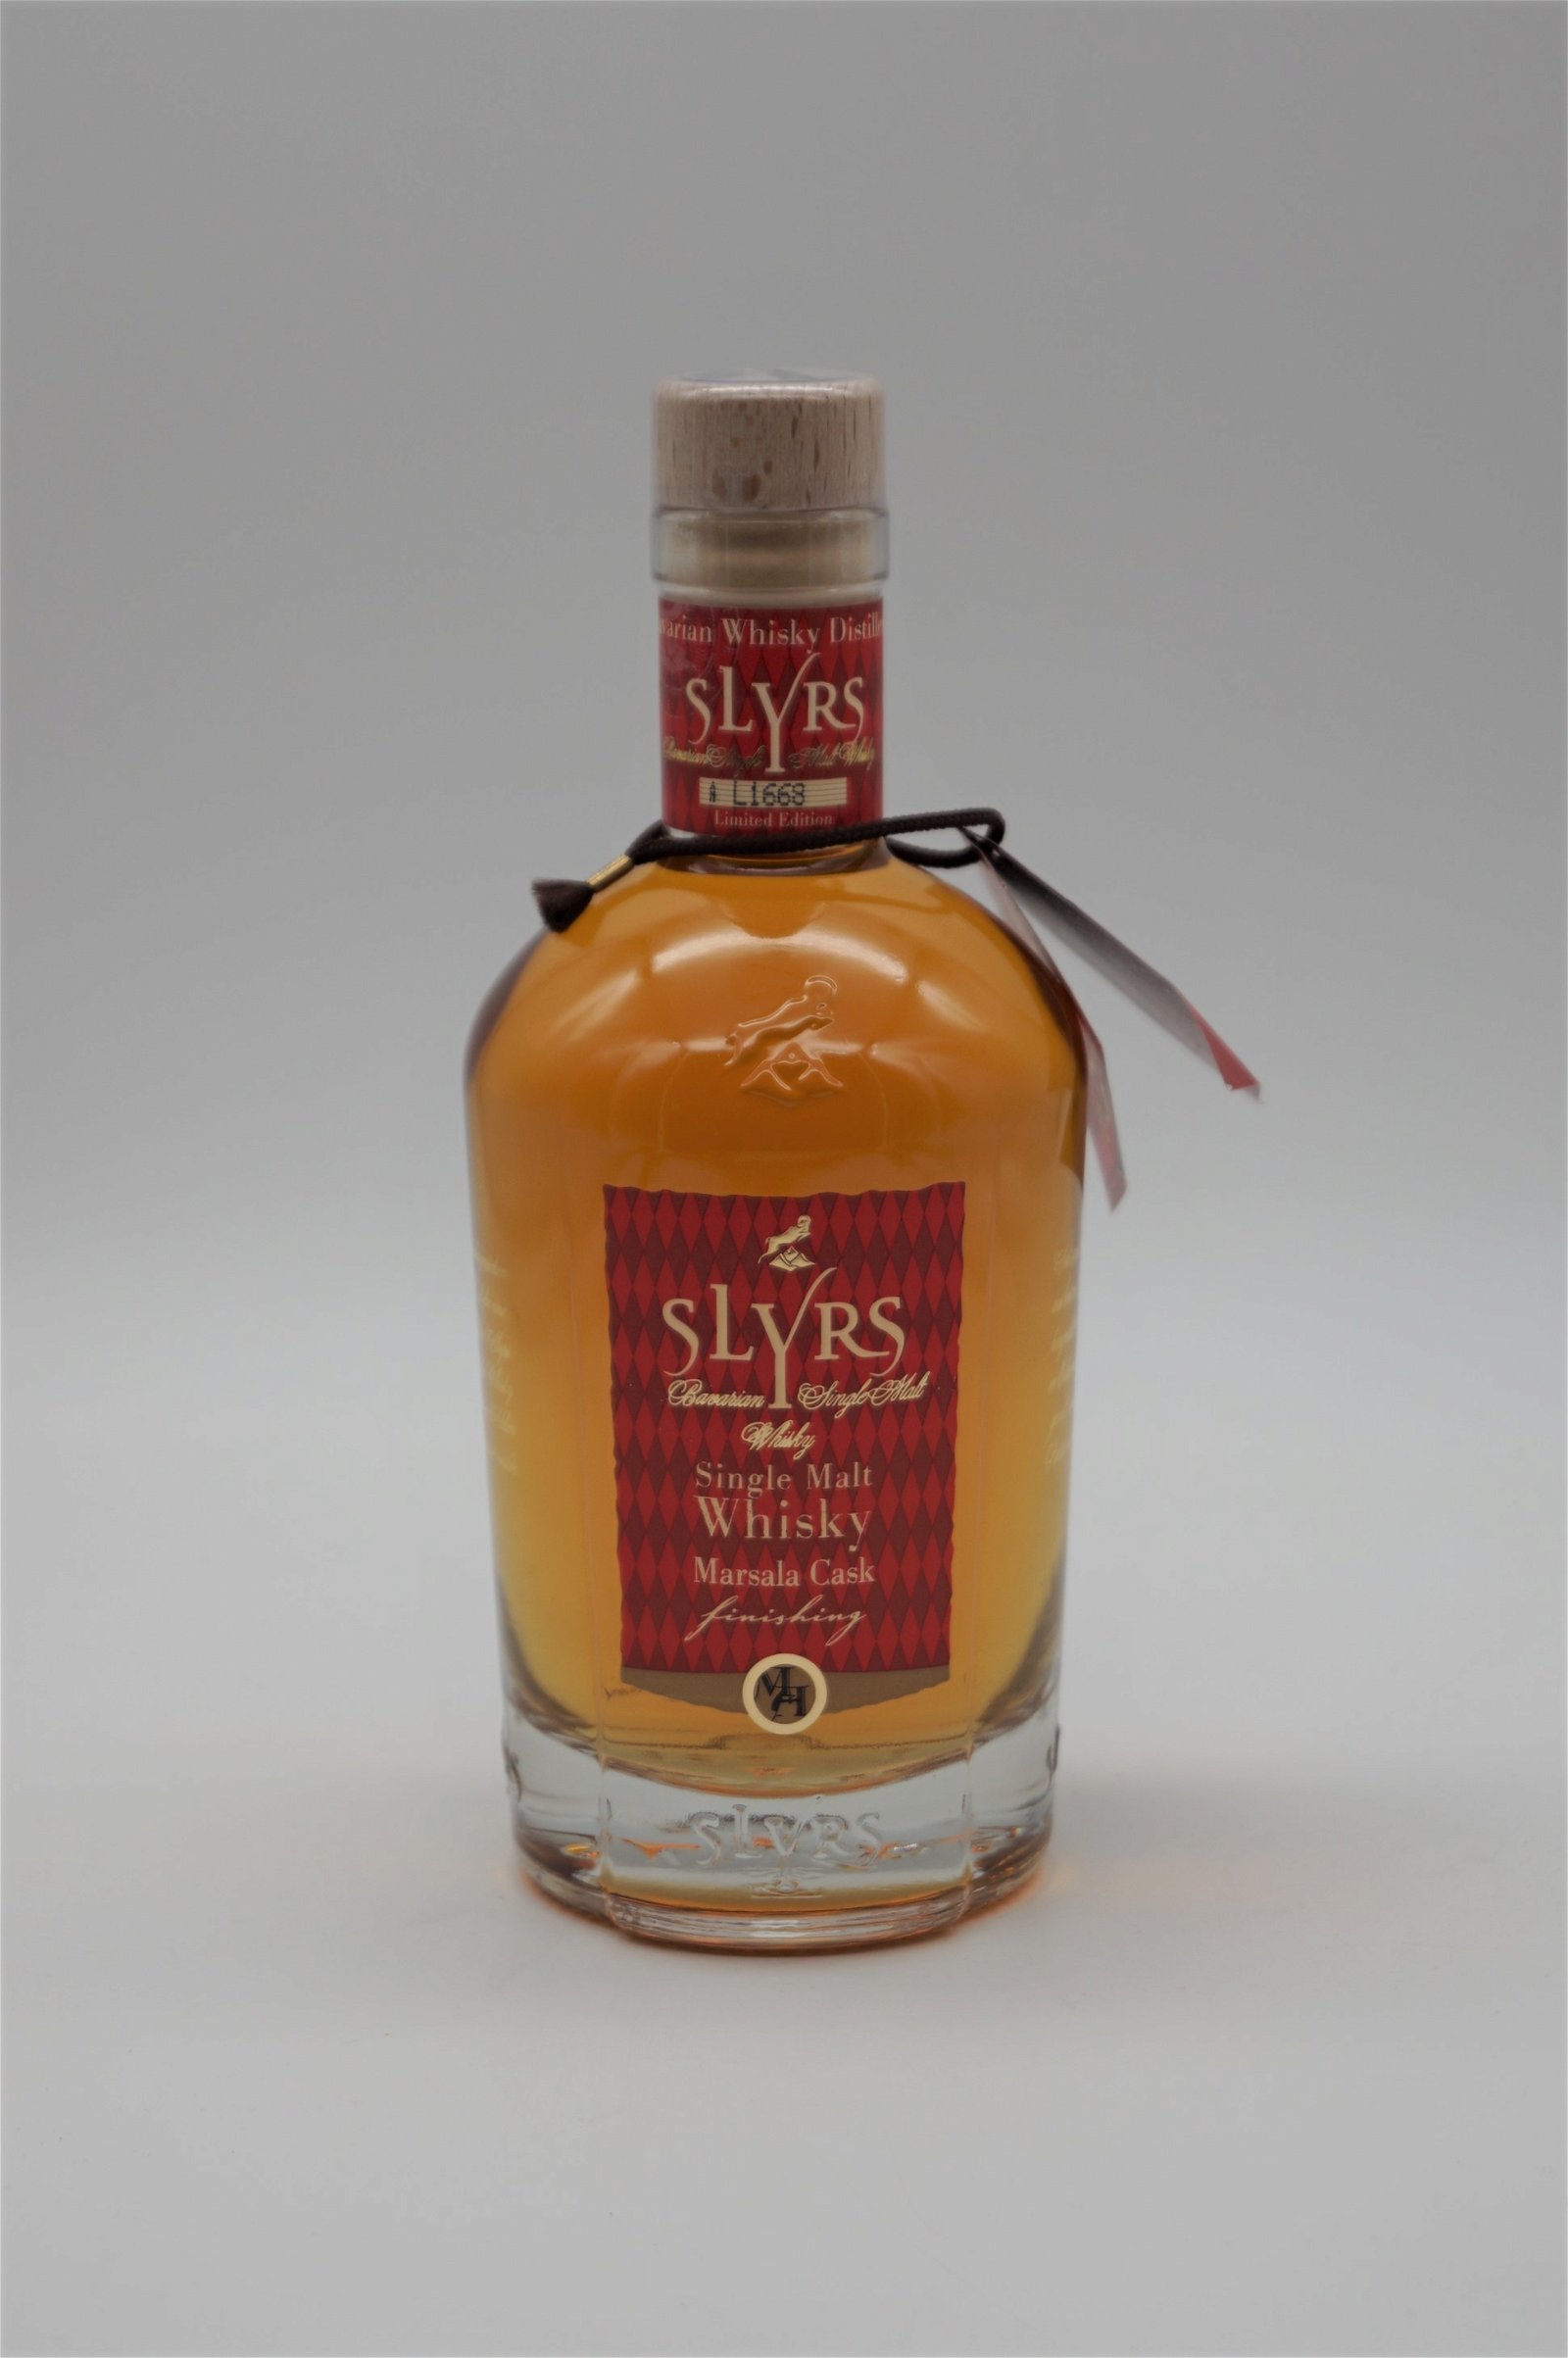 Slyrs Single Malt Whisky Marsala Cask Finishing